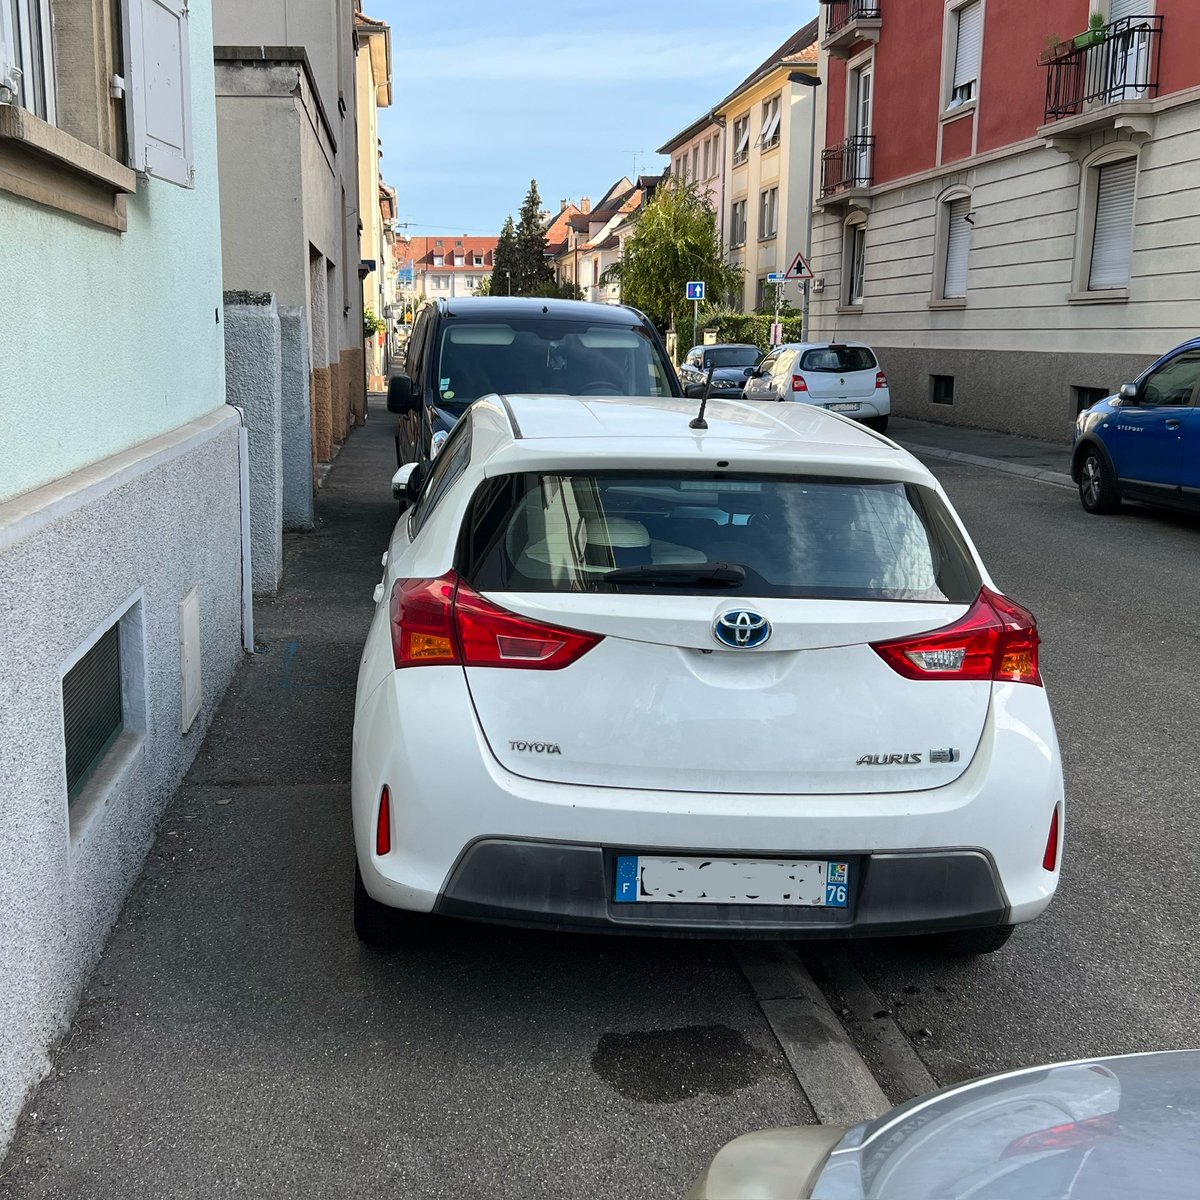 «Mon besoin de stationnement est supérieur à ton besoin de déplacement. Démerde-toi»

📍 Rue de Dossenheim

R417-11 Stationnement très gênant, amende de 4ème classe, 135€

#GCUM #Cronenbourg #Strasbourg #ImpunitéAutomobile